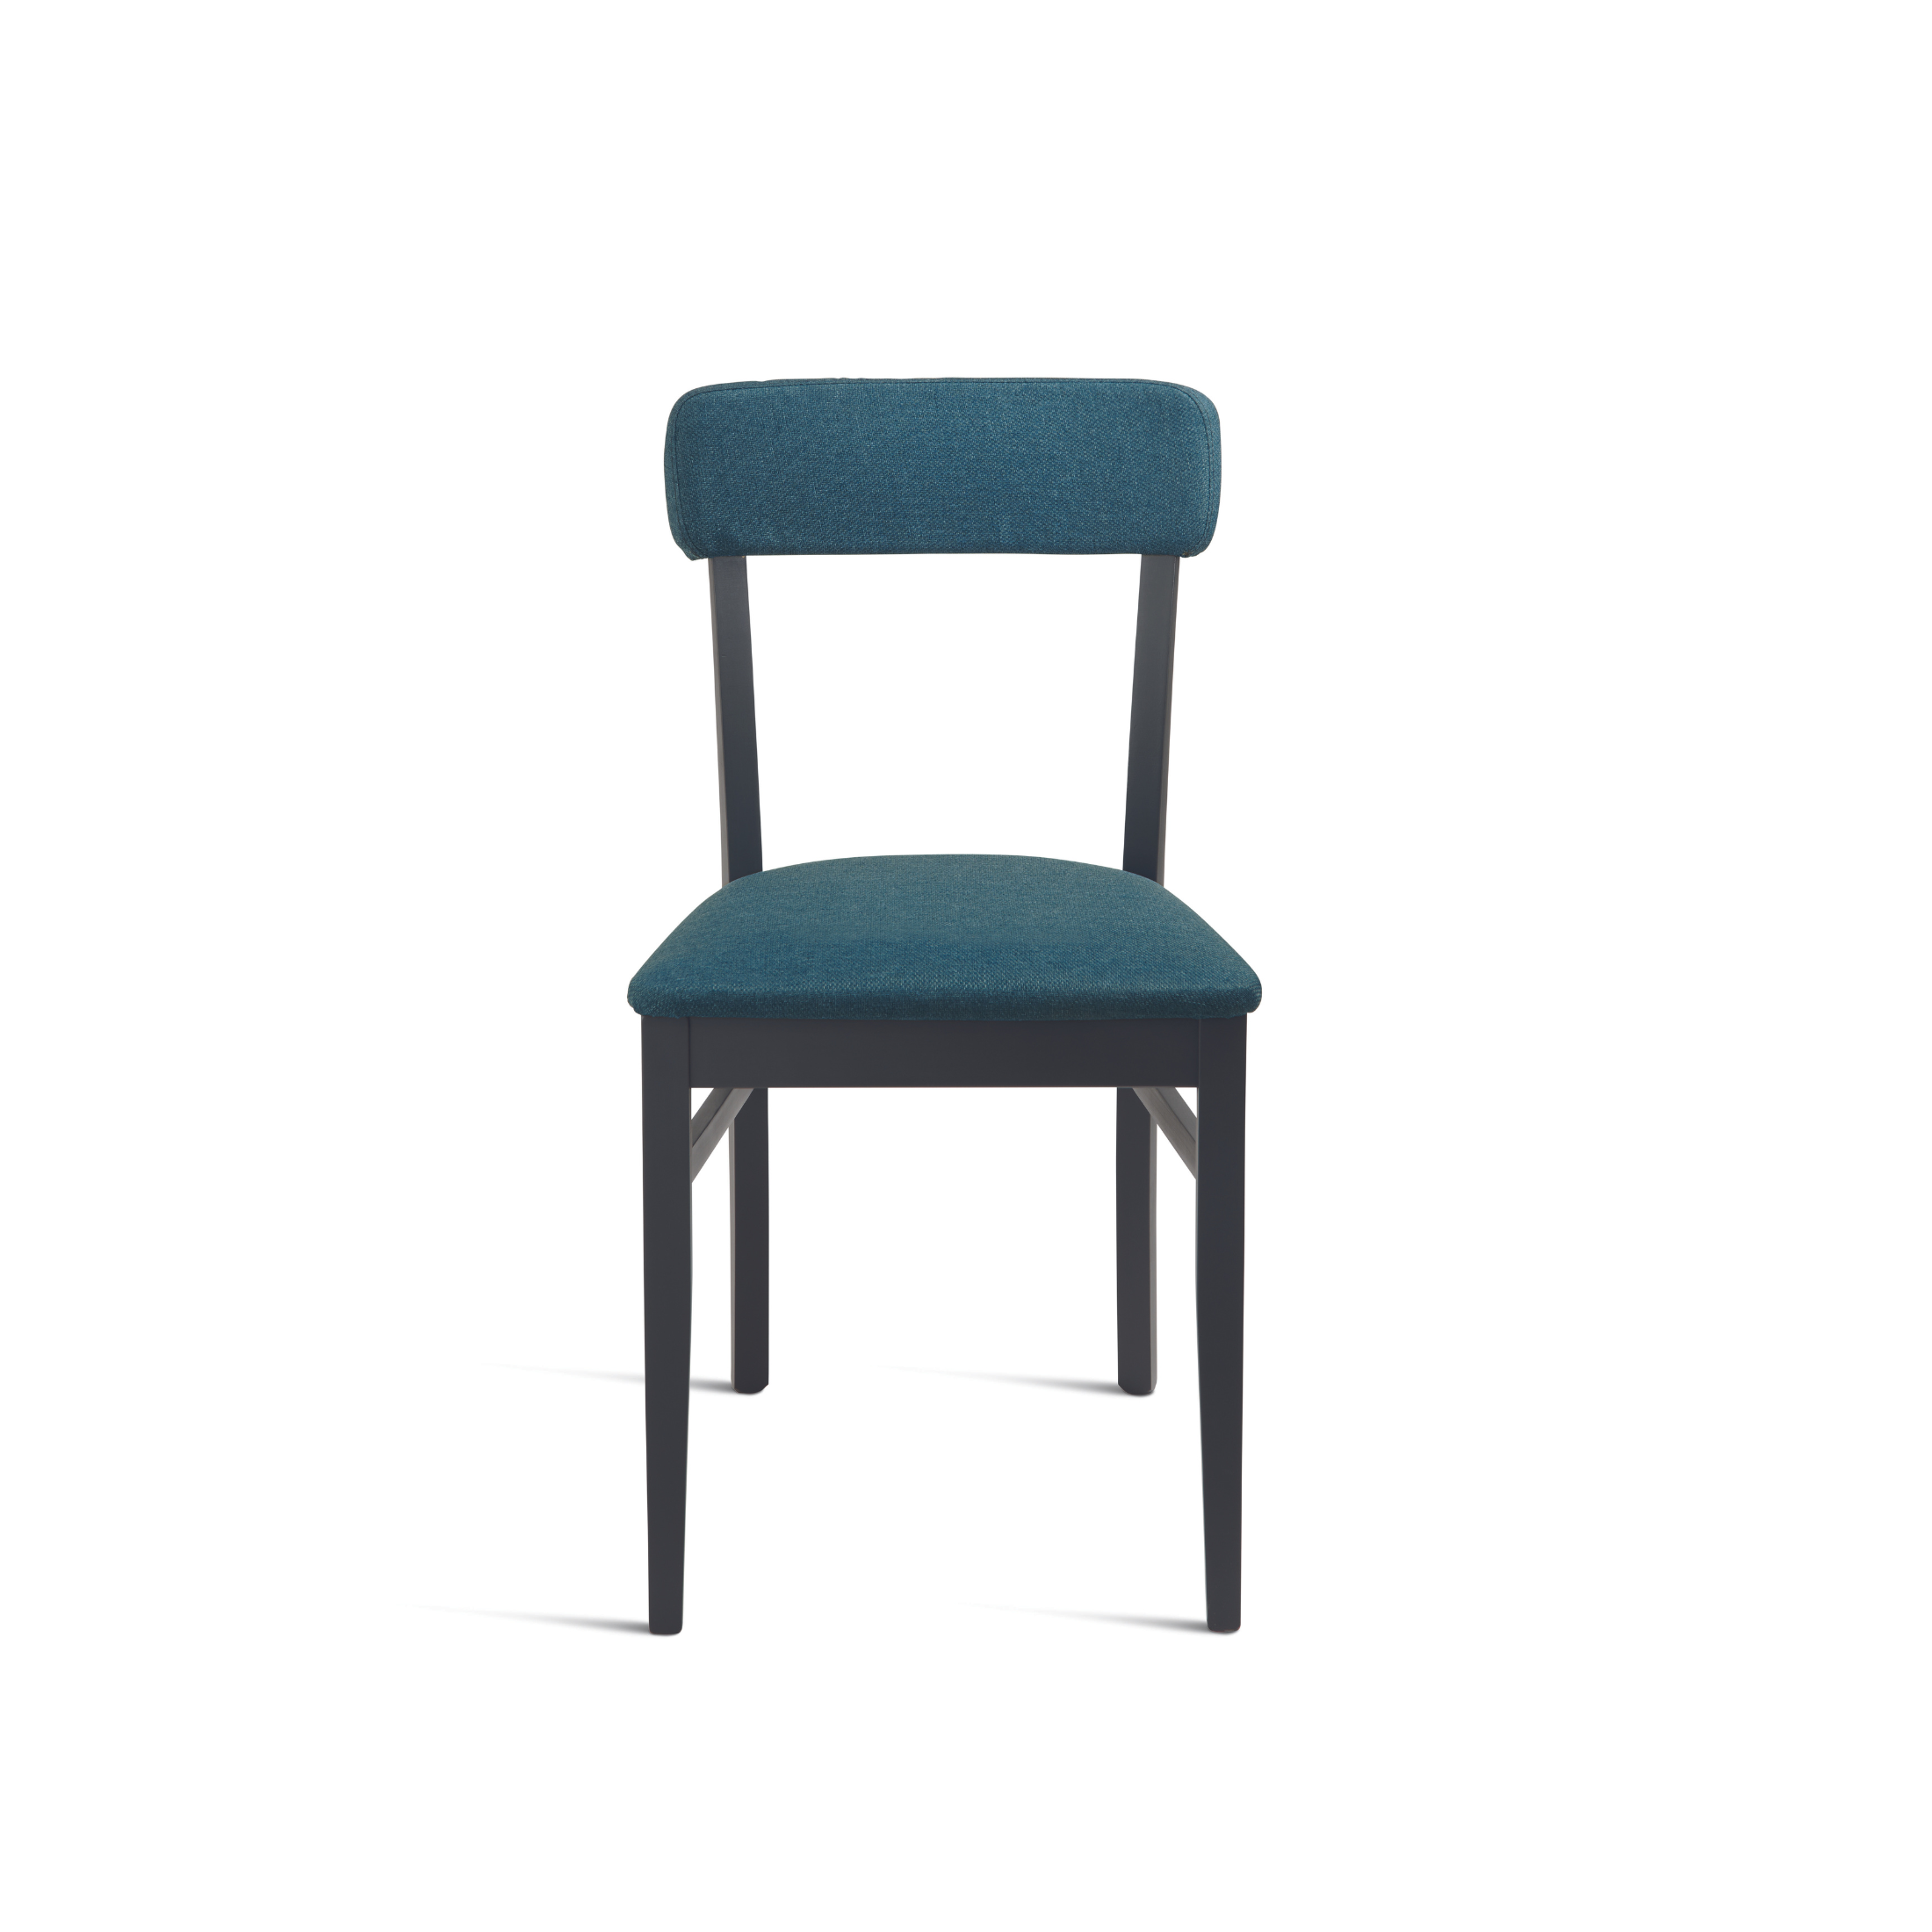 Chaise en tissu "Lipsia" avec structure en bois 46x45 cm 82h